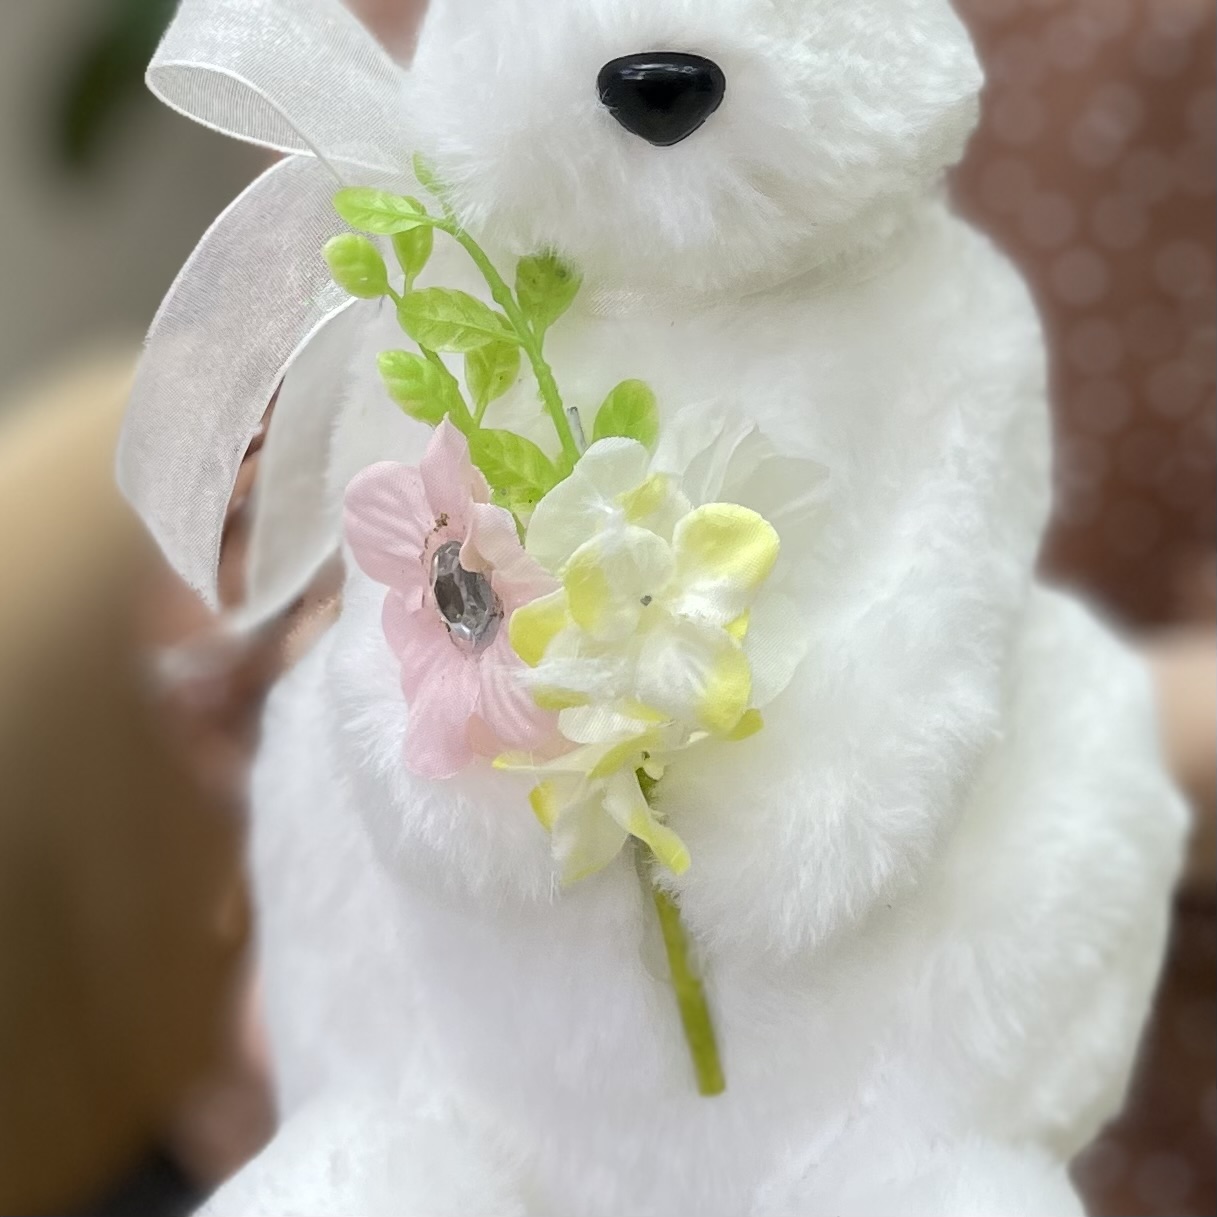 Игрушка Пасхальный белый кролик